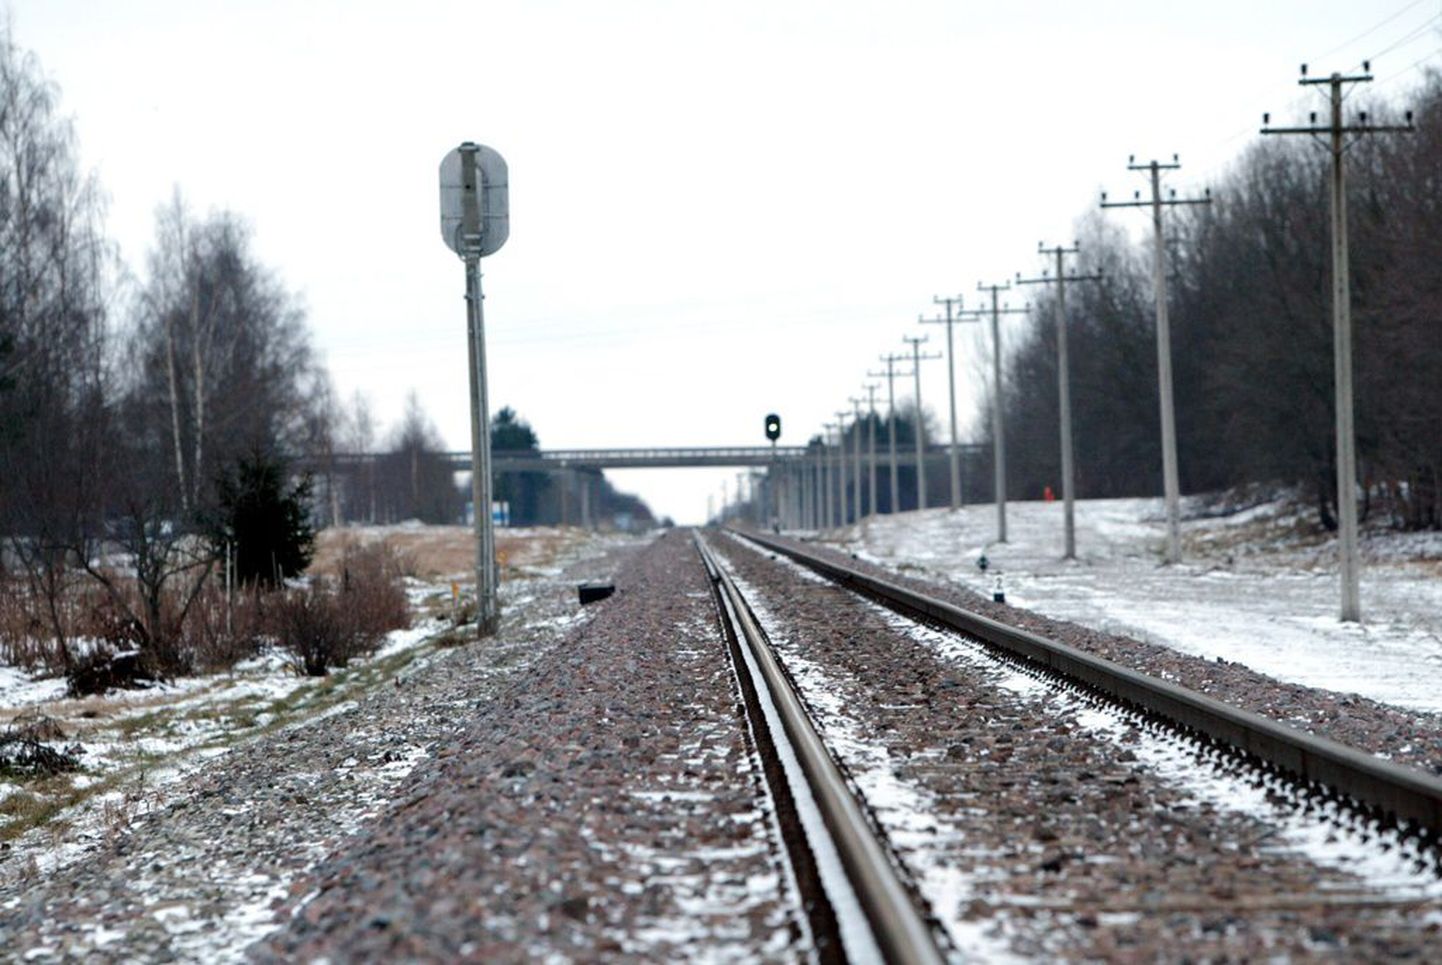 Täna võib Kasahstanist teele asuda söelaadungiga rong, läbida oma teel tuhandete kilomeetrite kaupa Euraasia steppe, ning pidada kinni mõne Valgevene tehase väravate ees – ilma ühegi tollipeatuseta.